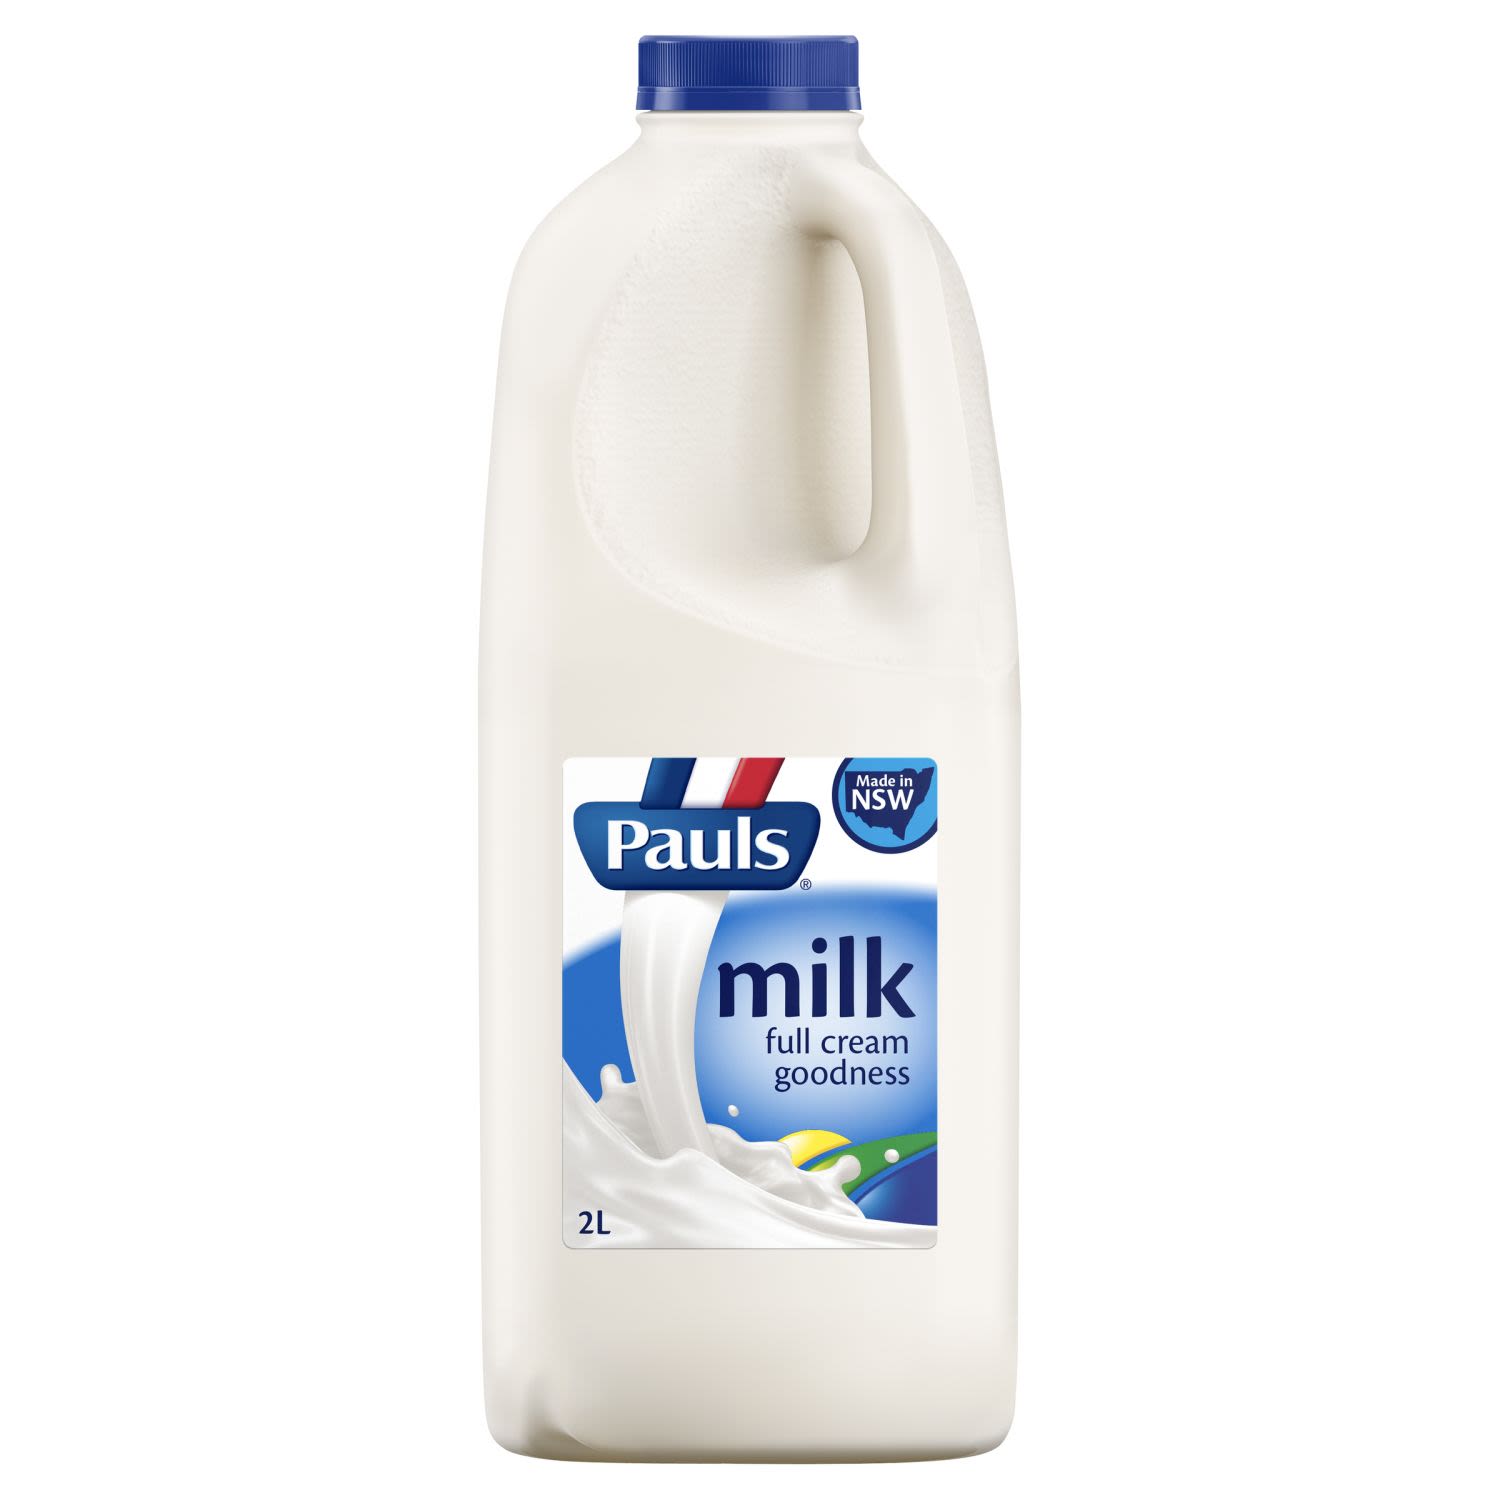 Pauls Full Cream Milk NSW, 2 Litre